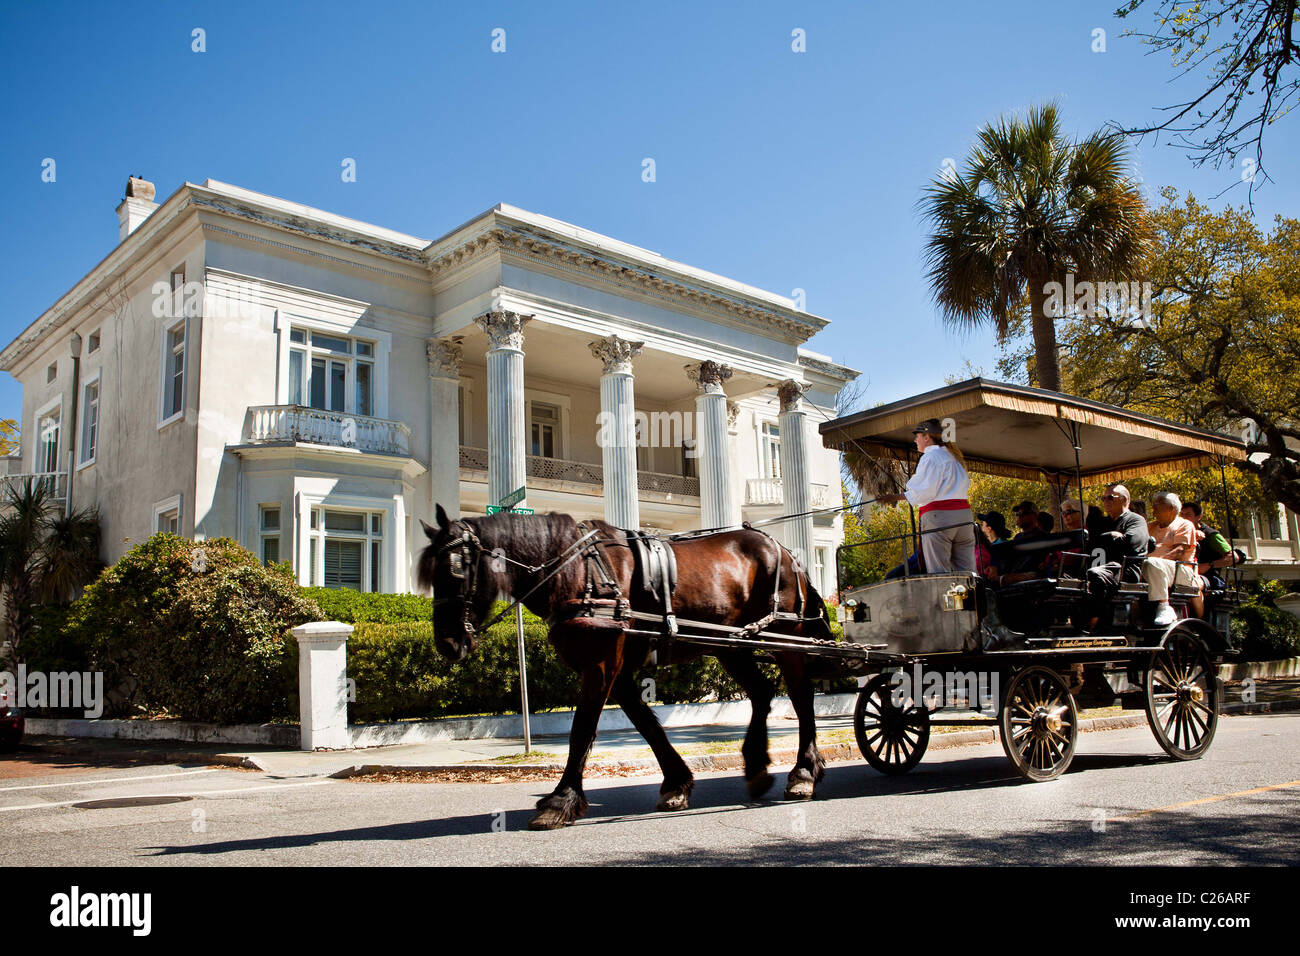 palmetto horse carriage tours